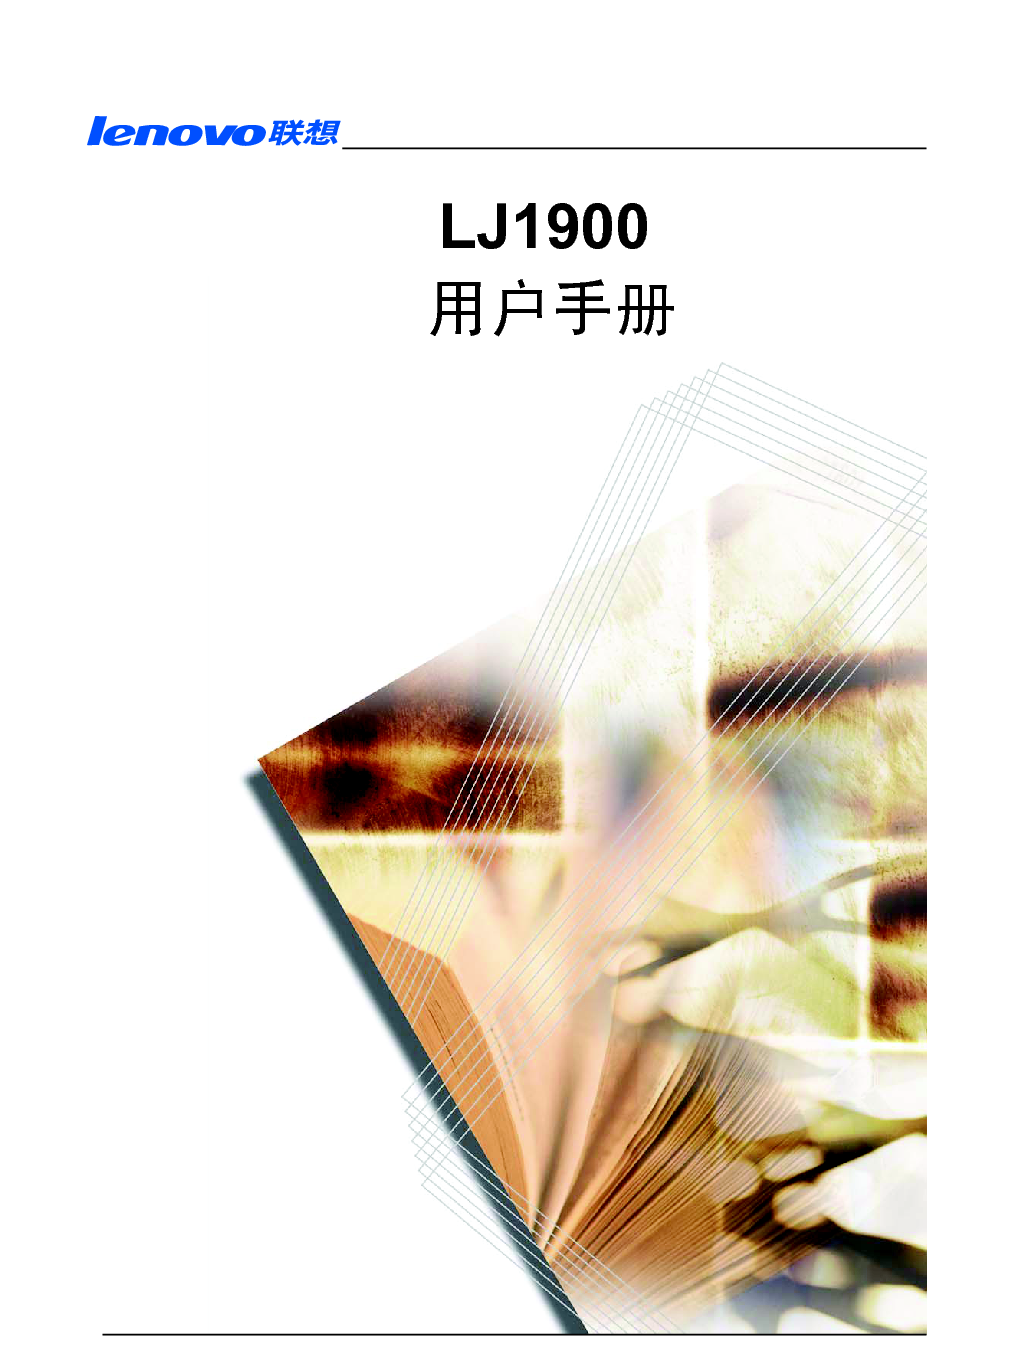 联想 Lenovo LJ1900 用户手册 封面